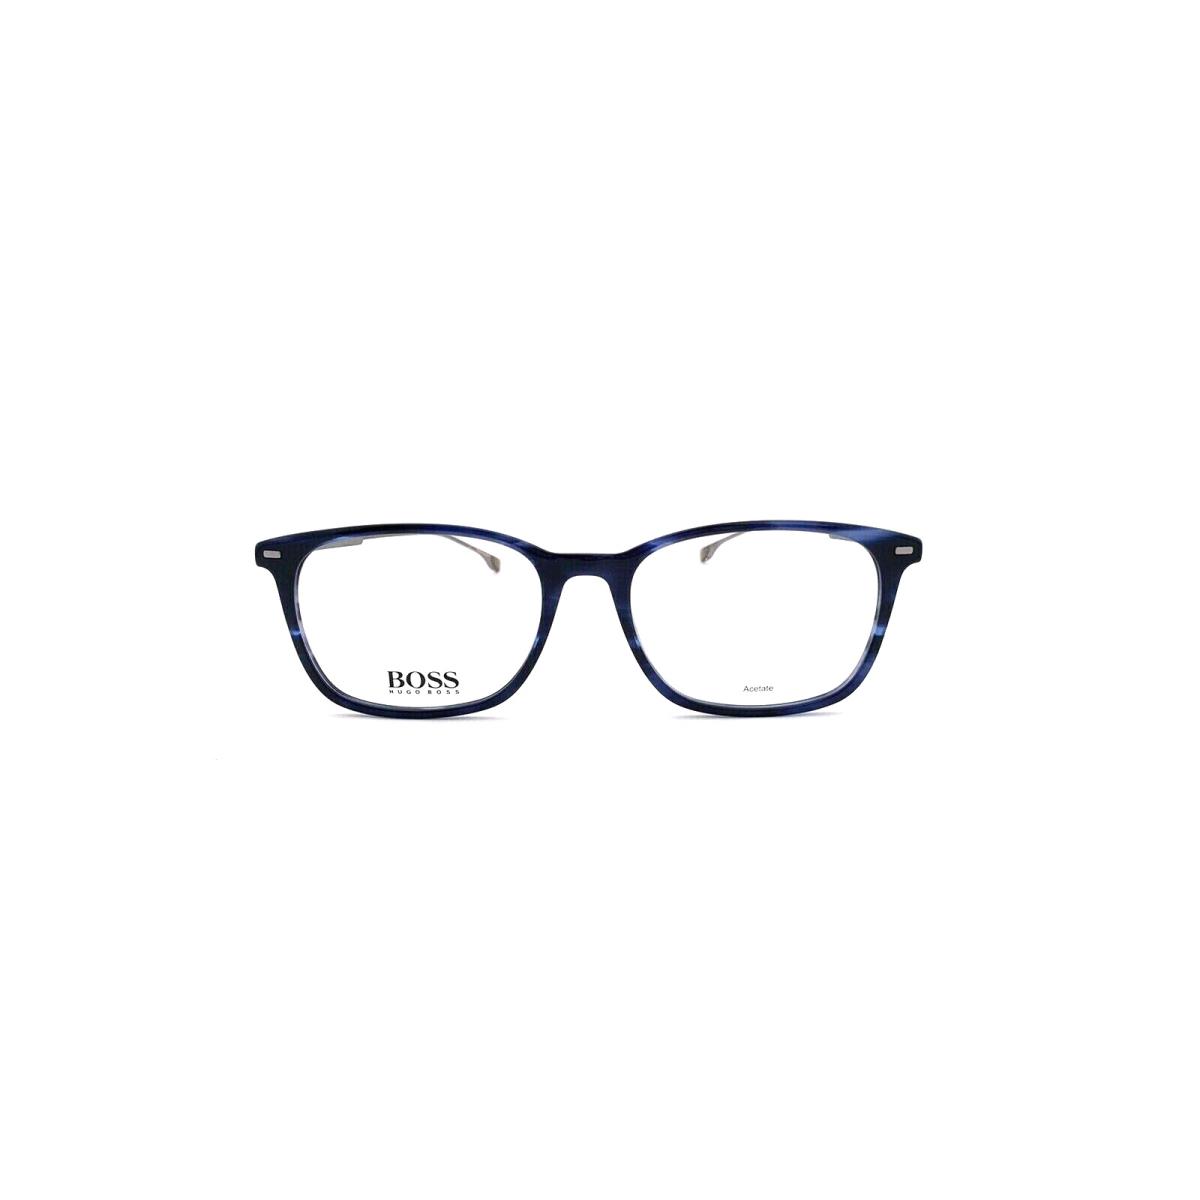 Hugo Boss Frames Blue Horn Acetate Mens RX Eyeglasses Boss 1015 381 58mm